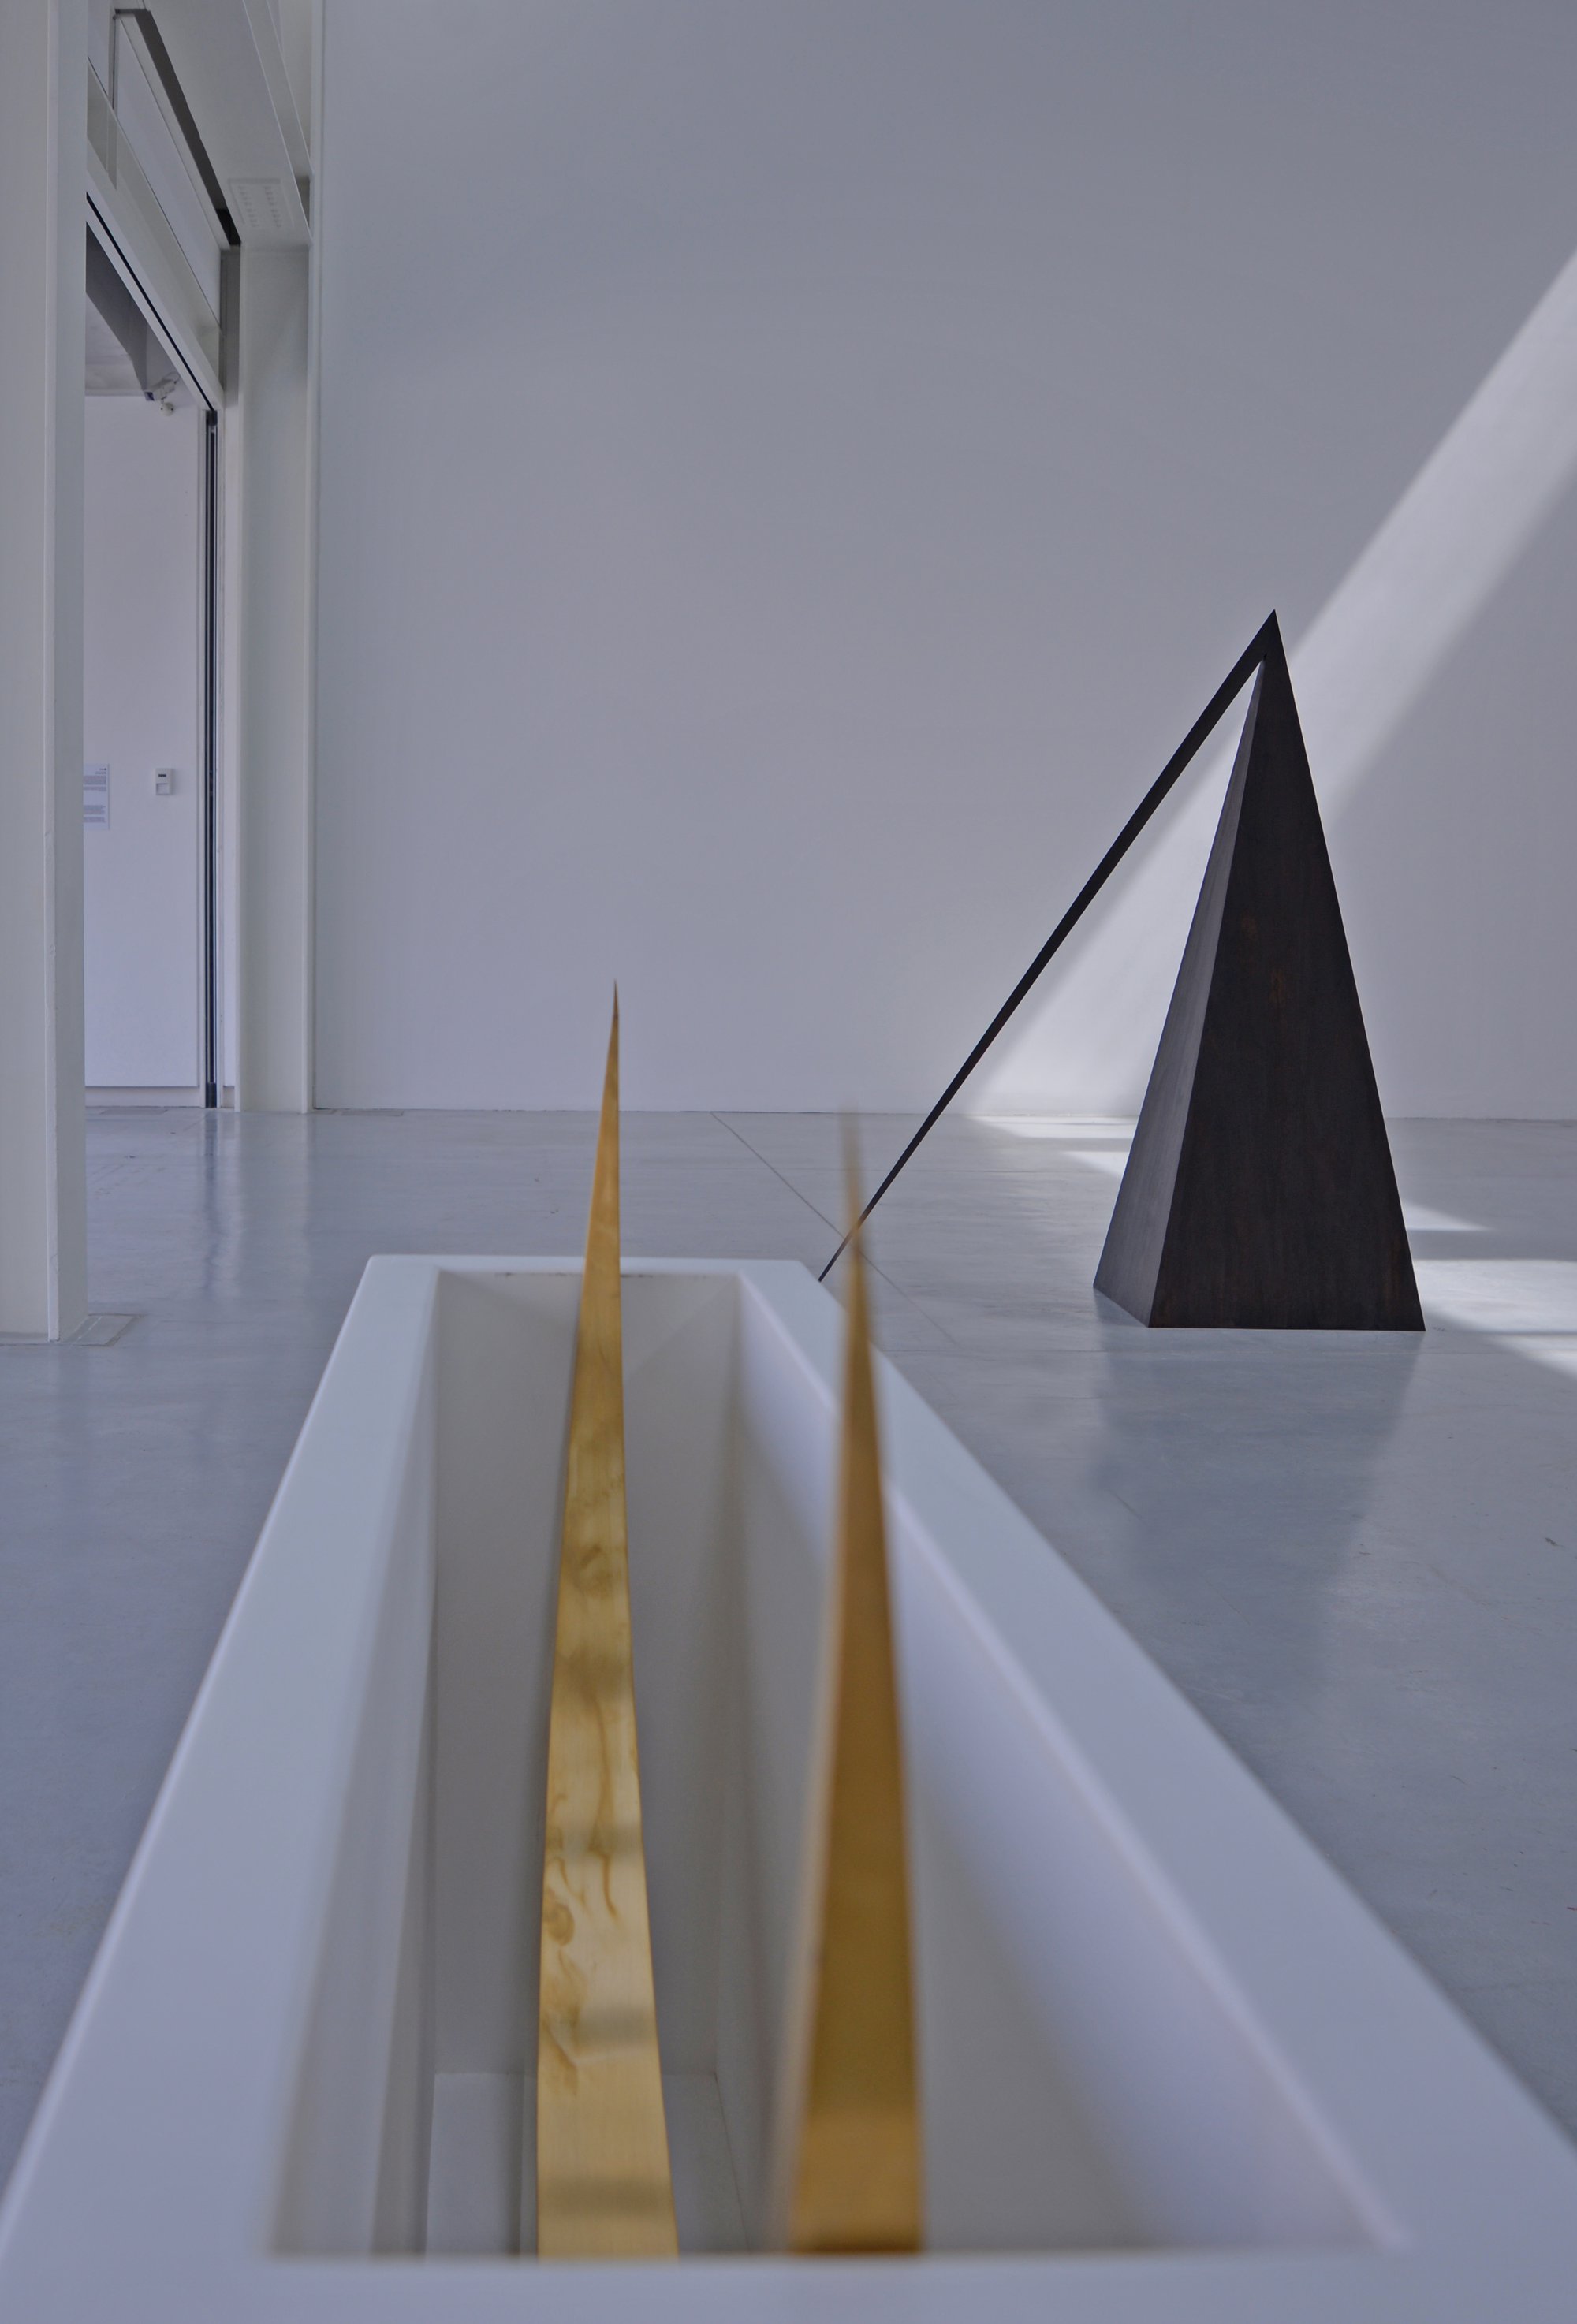 Iman Issa, Heritage Studies. Installation view, Sharjah Biennial 12, Sharjah, UAE, 2015